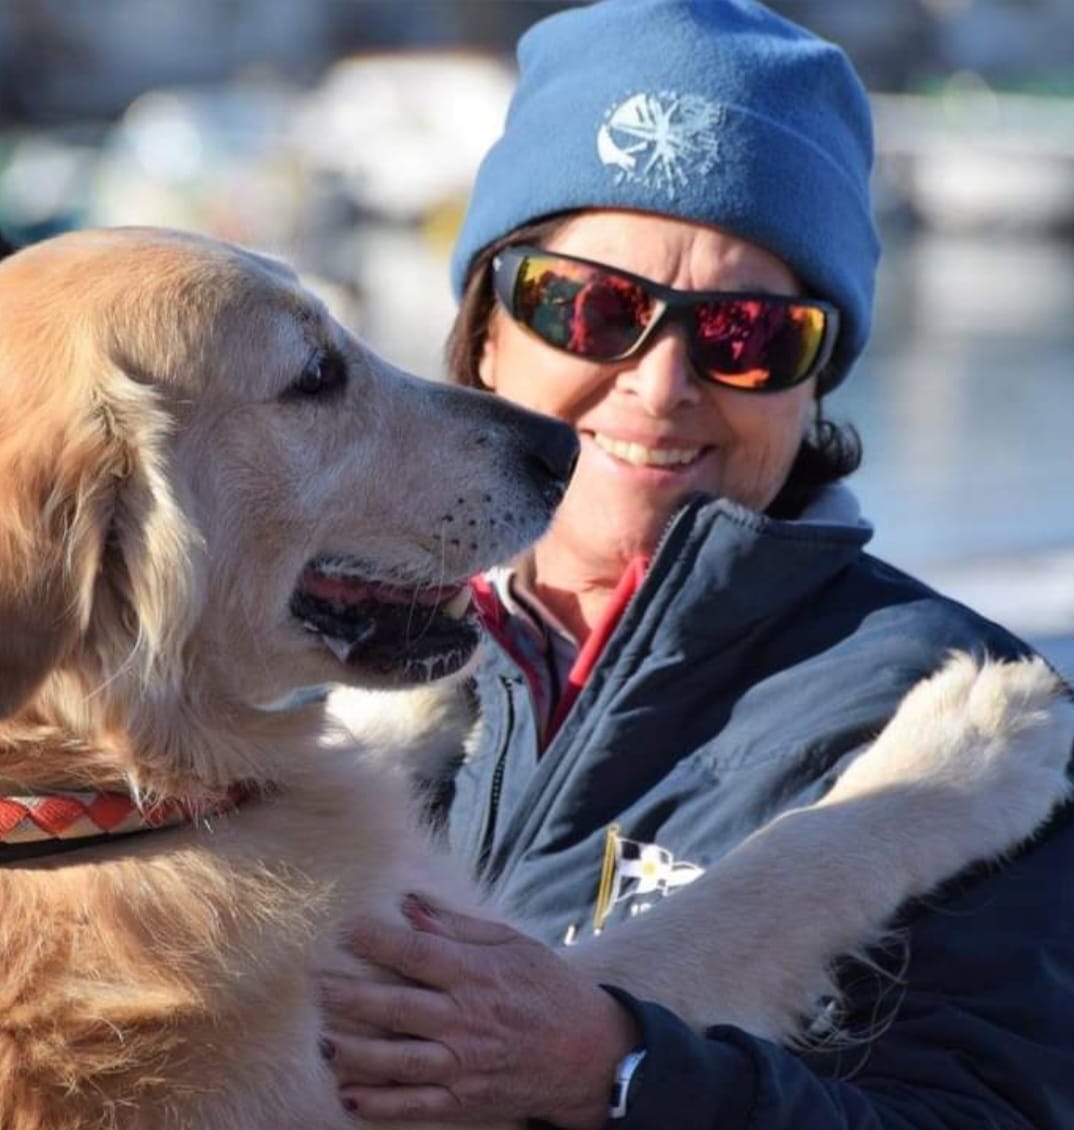 In memoria di Chiara Massagli: un addio alla brava velista, allenatrice e ufficiale di regata